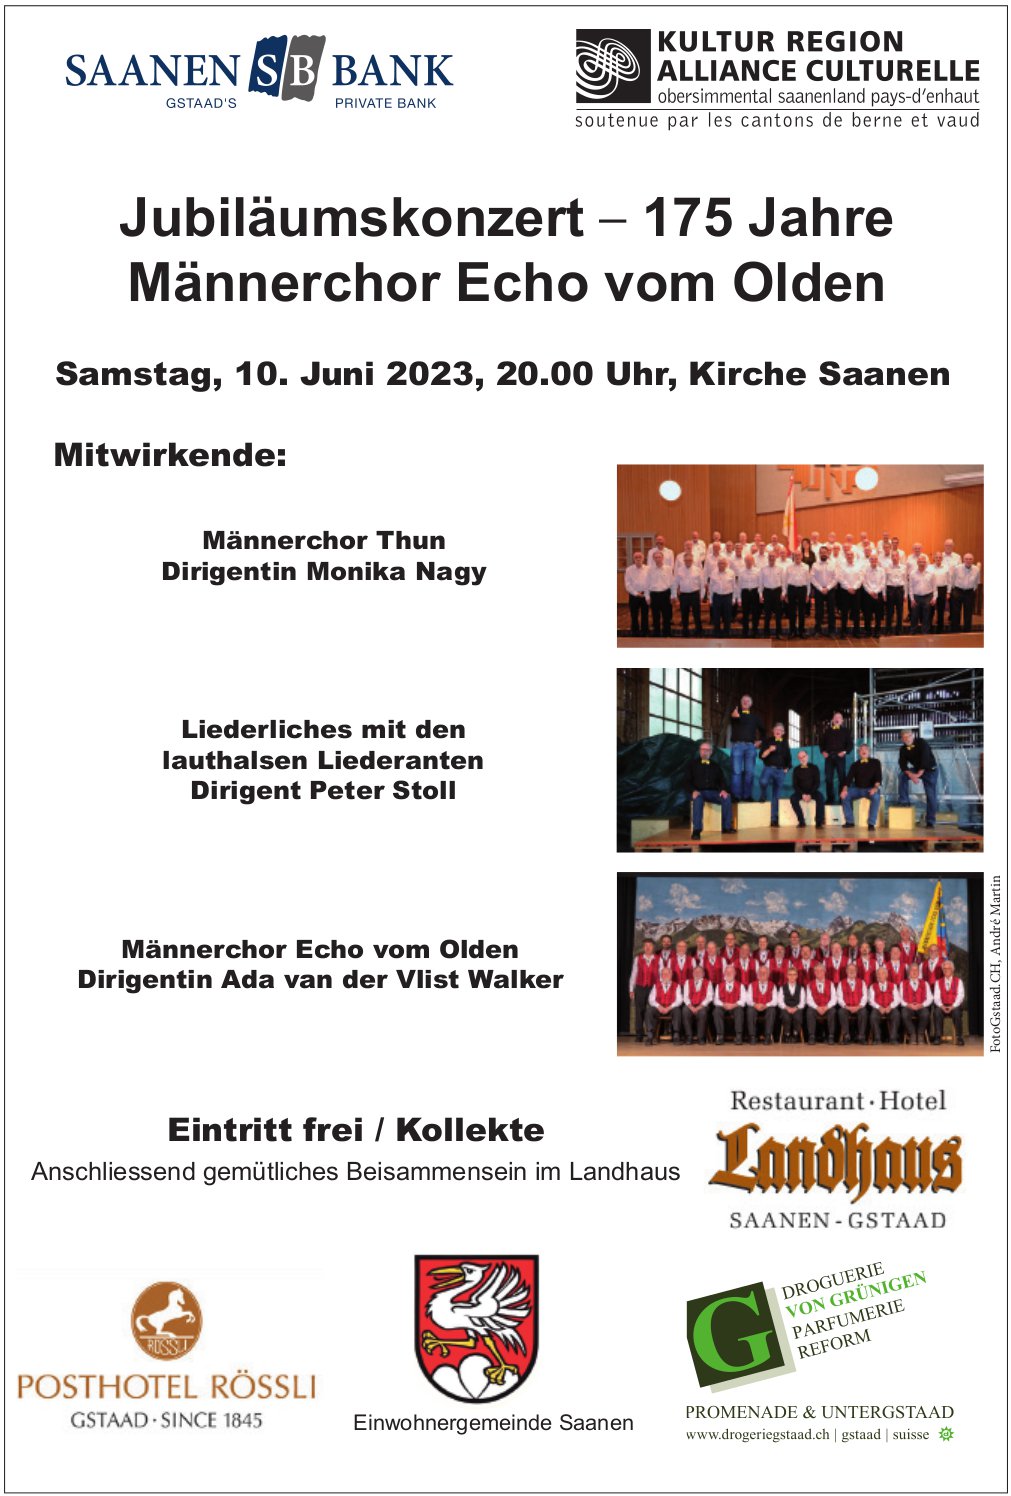 Jubiläumskonzert - 175 Jahre Männerchor Echo vom Olden, 10. Juni, Kirche, Saanen